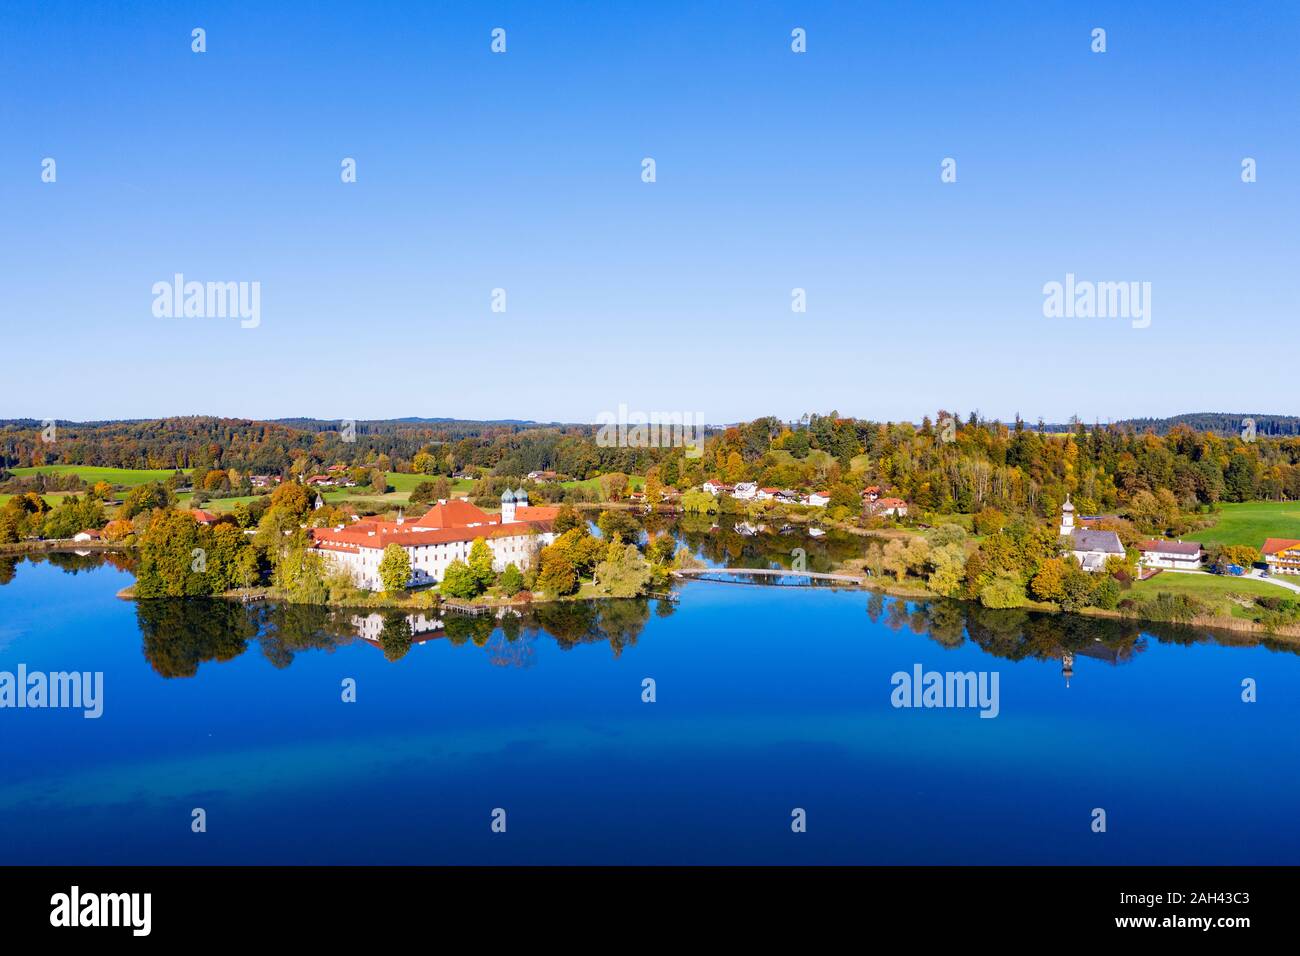 Alemania, Baviera, Seeon-Seebruck, cielo despejado sobre el lago Klostersee y Abadía Seeon Foto de stock